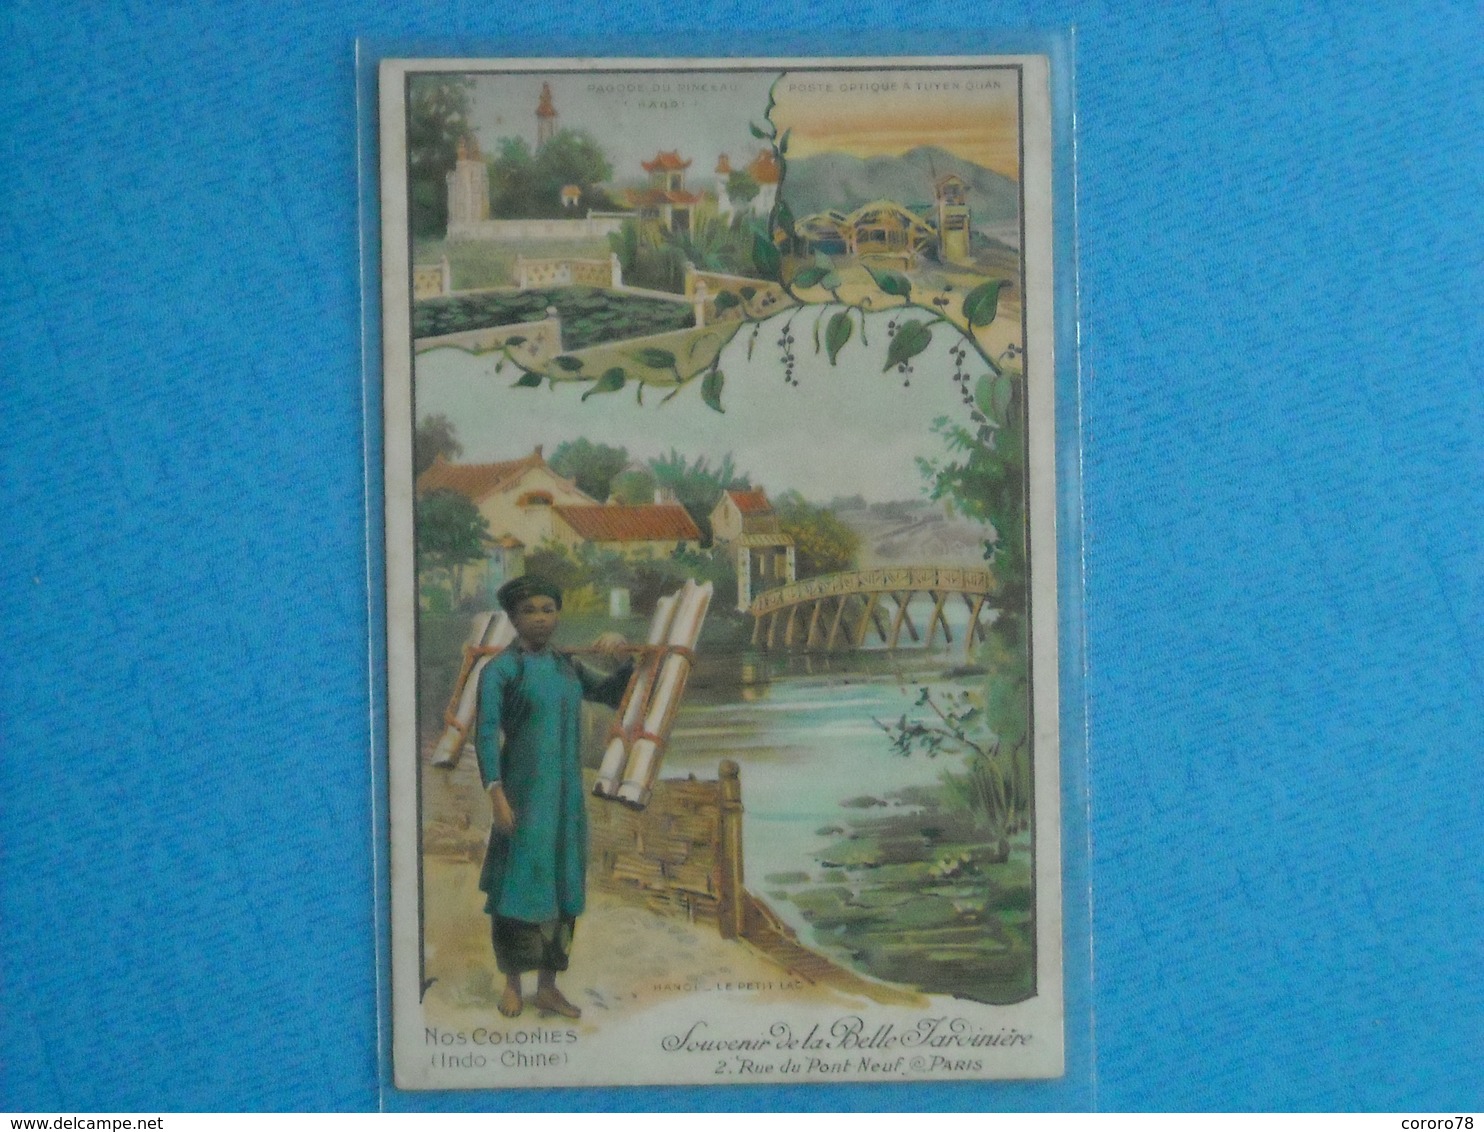 Nos Colonies (Indo-Chine) Souvenir De La Belle Jardiniére, 2 Rue Du Pont Neuf - PARIS - Advertising